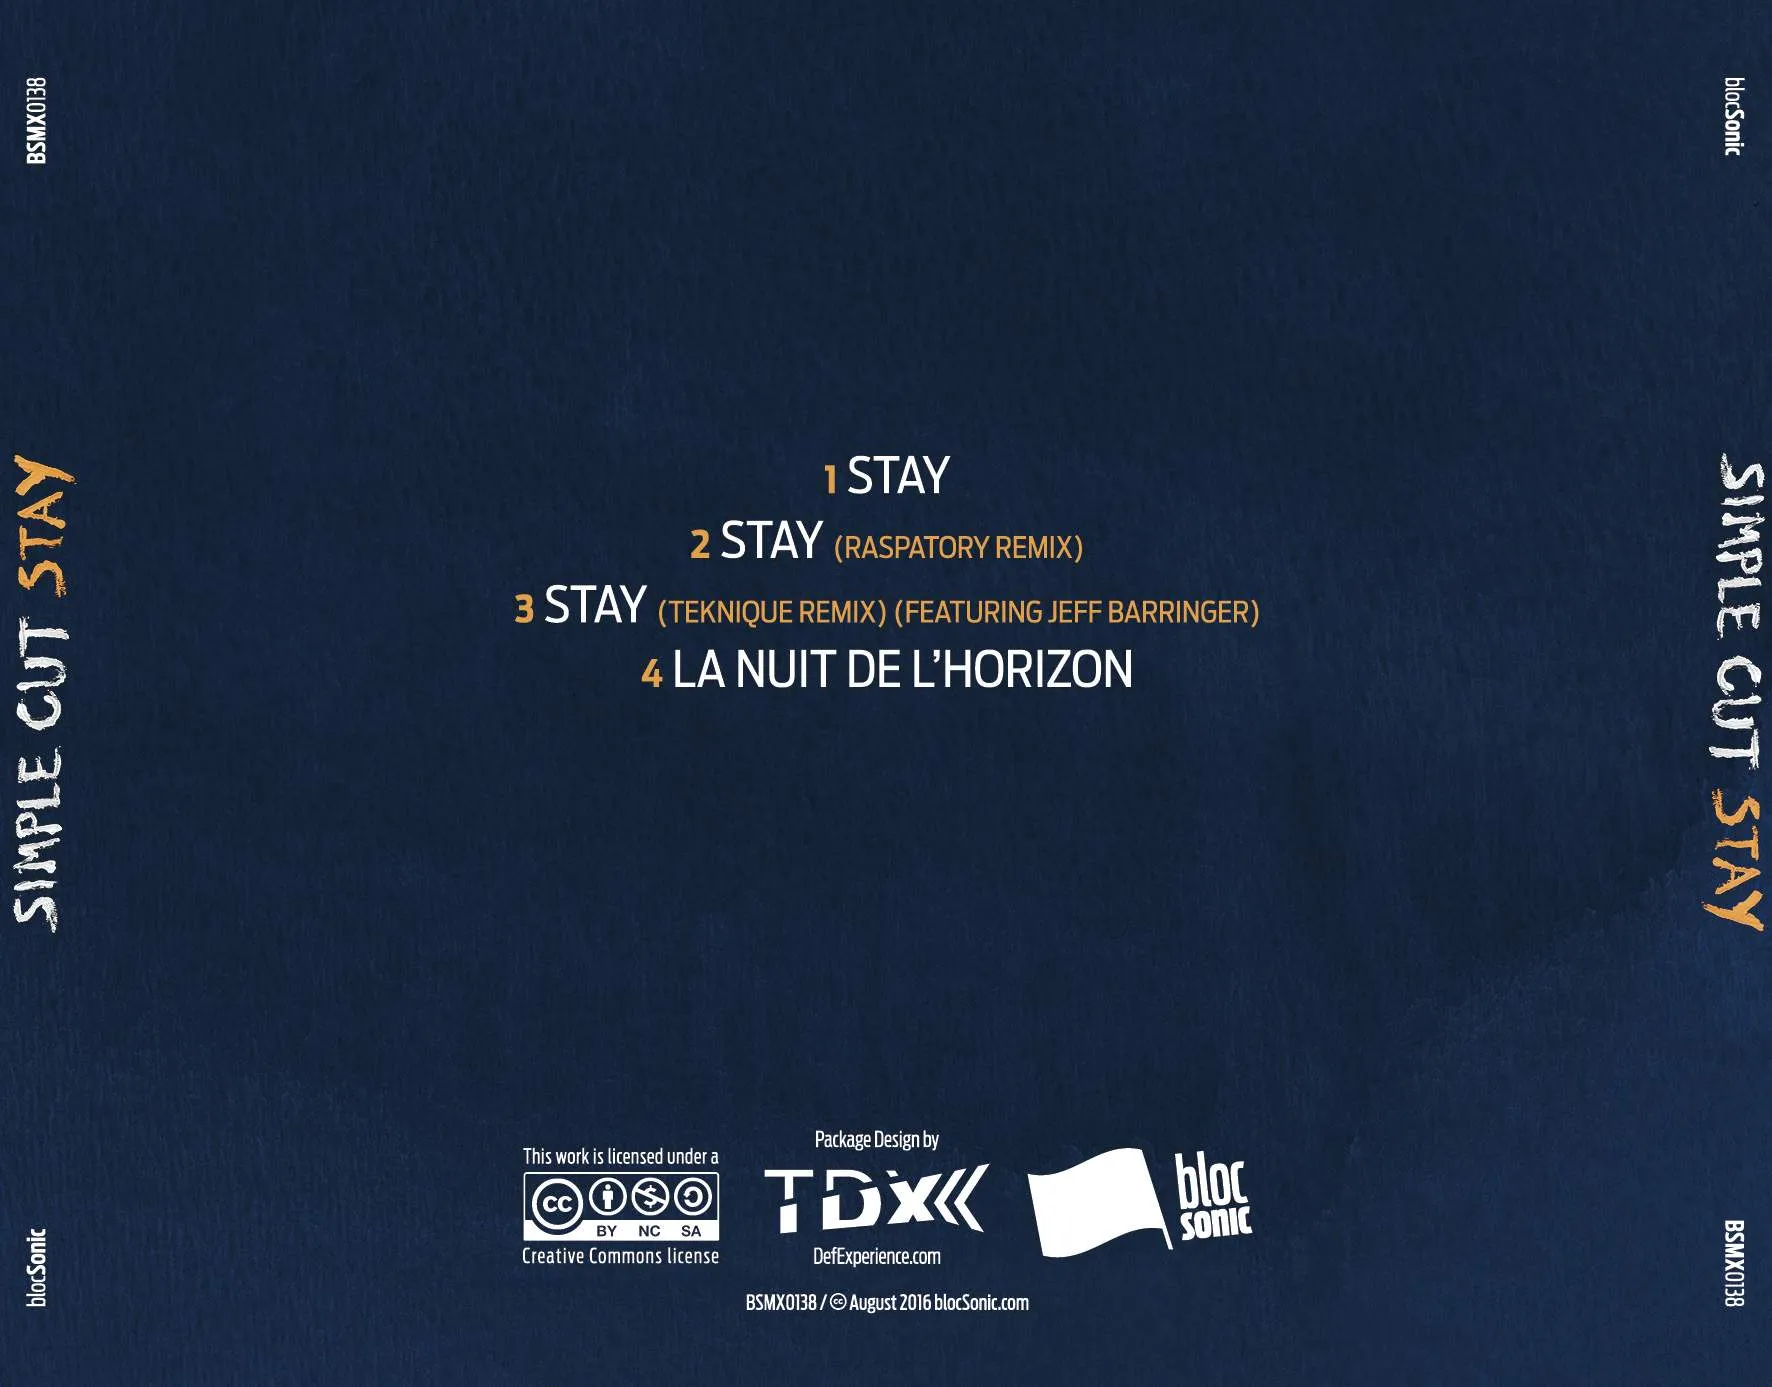 Album traycard for “Stay” by Simple CUT